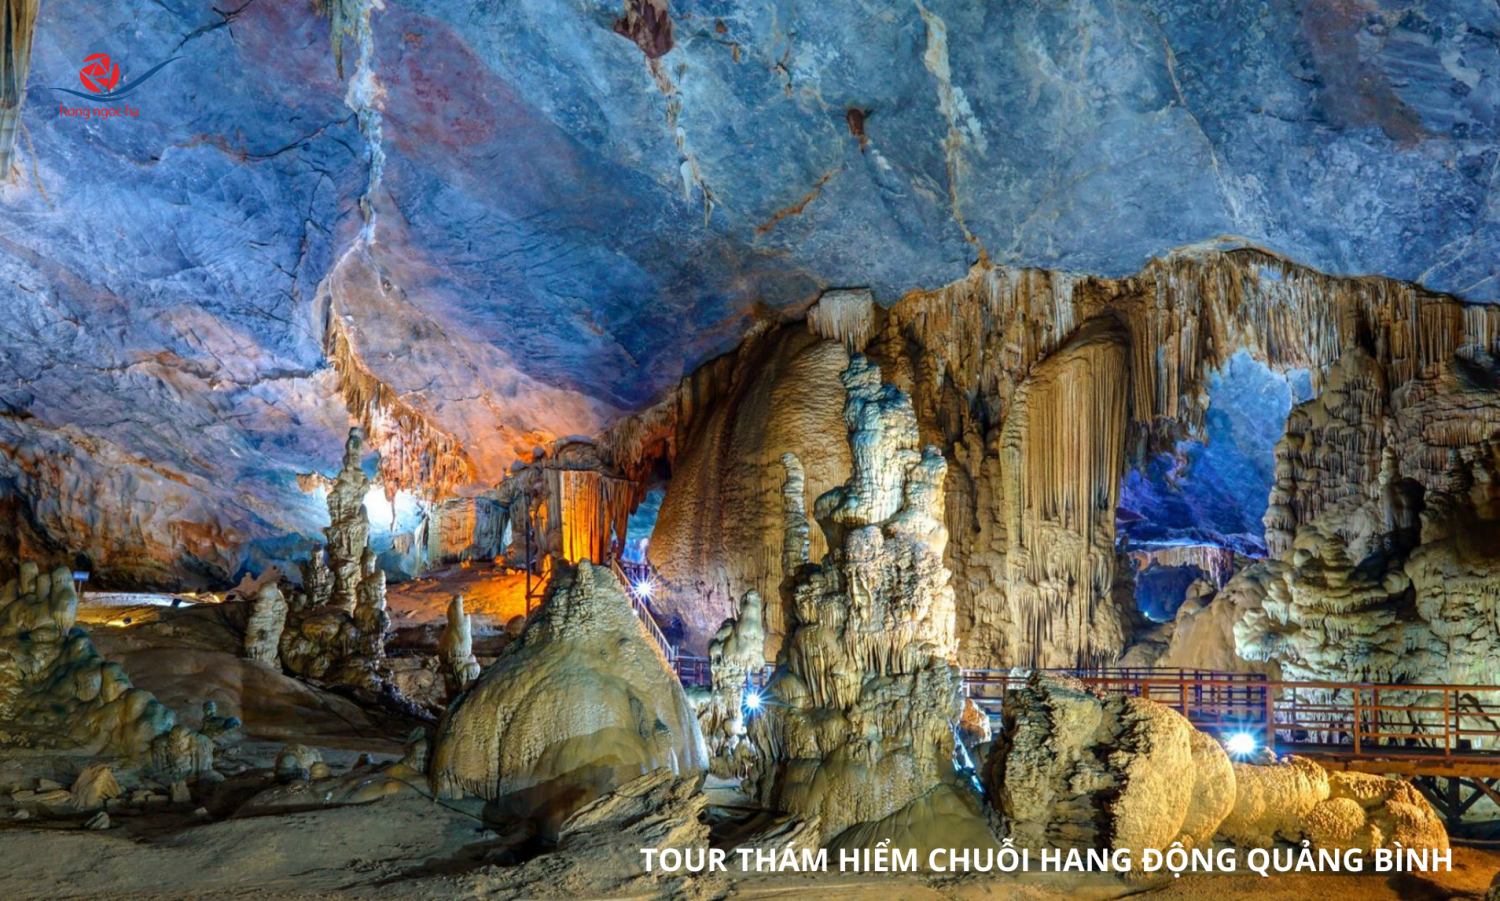 Tour Thám Hiểm chuỗi hang động Quảng Bình (3 ngày 2 đêm)